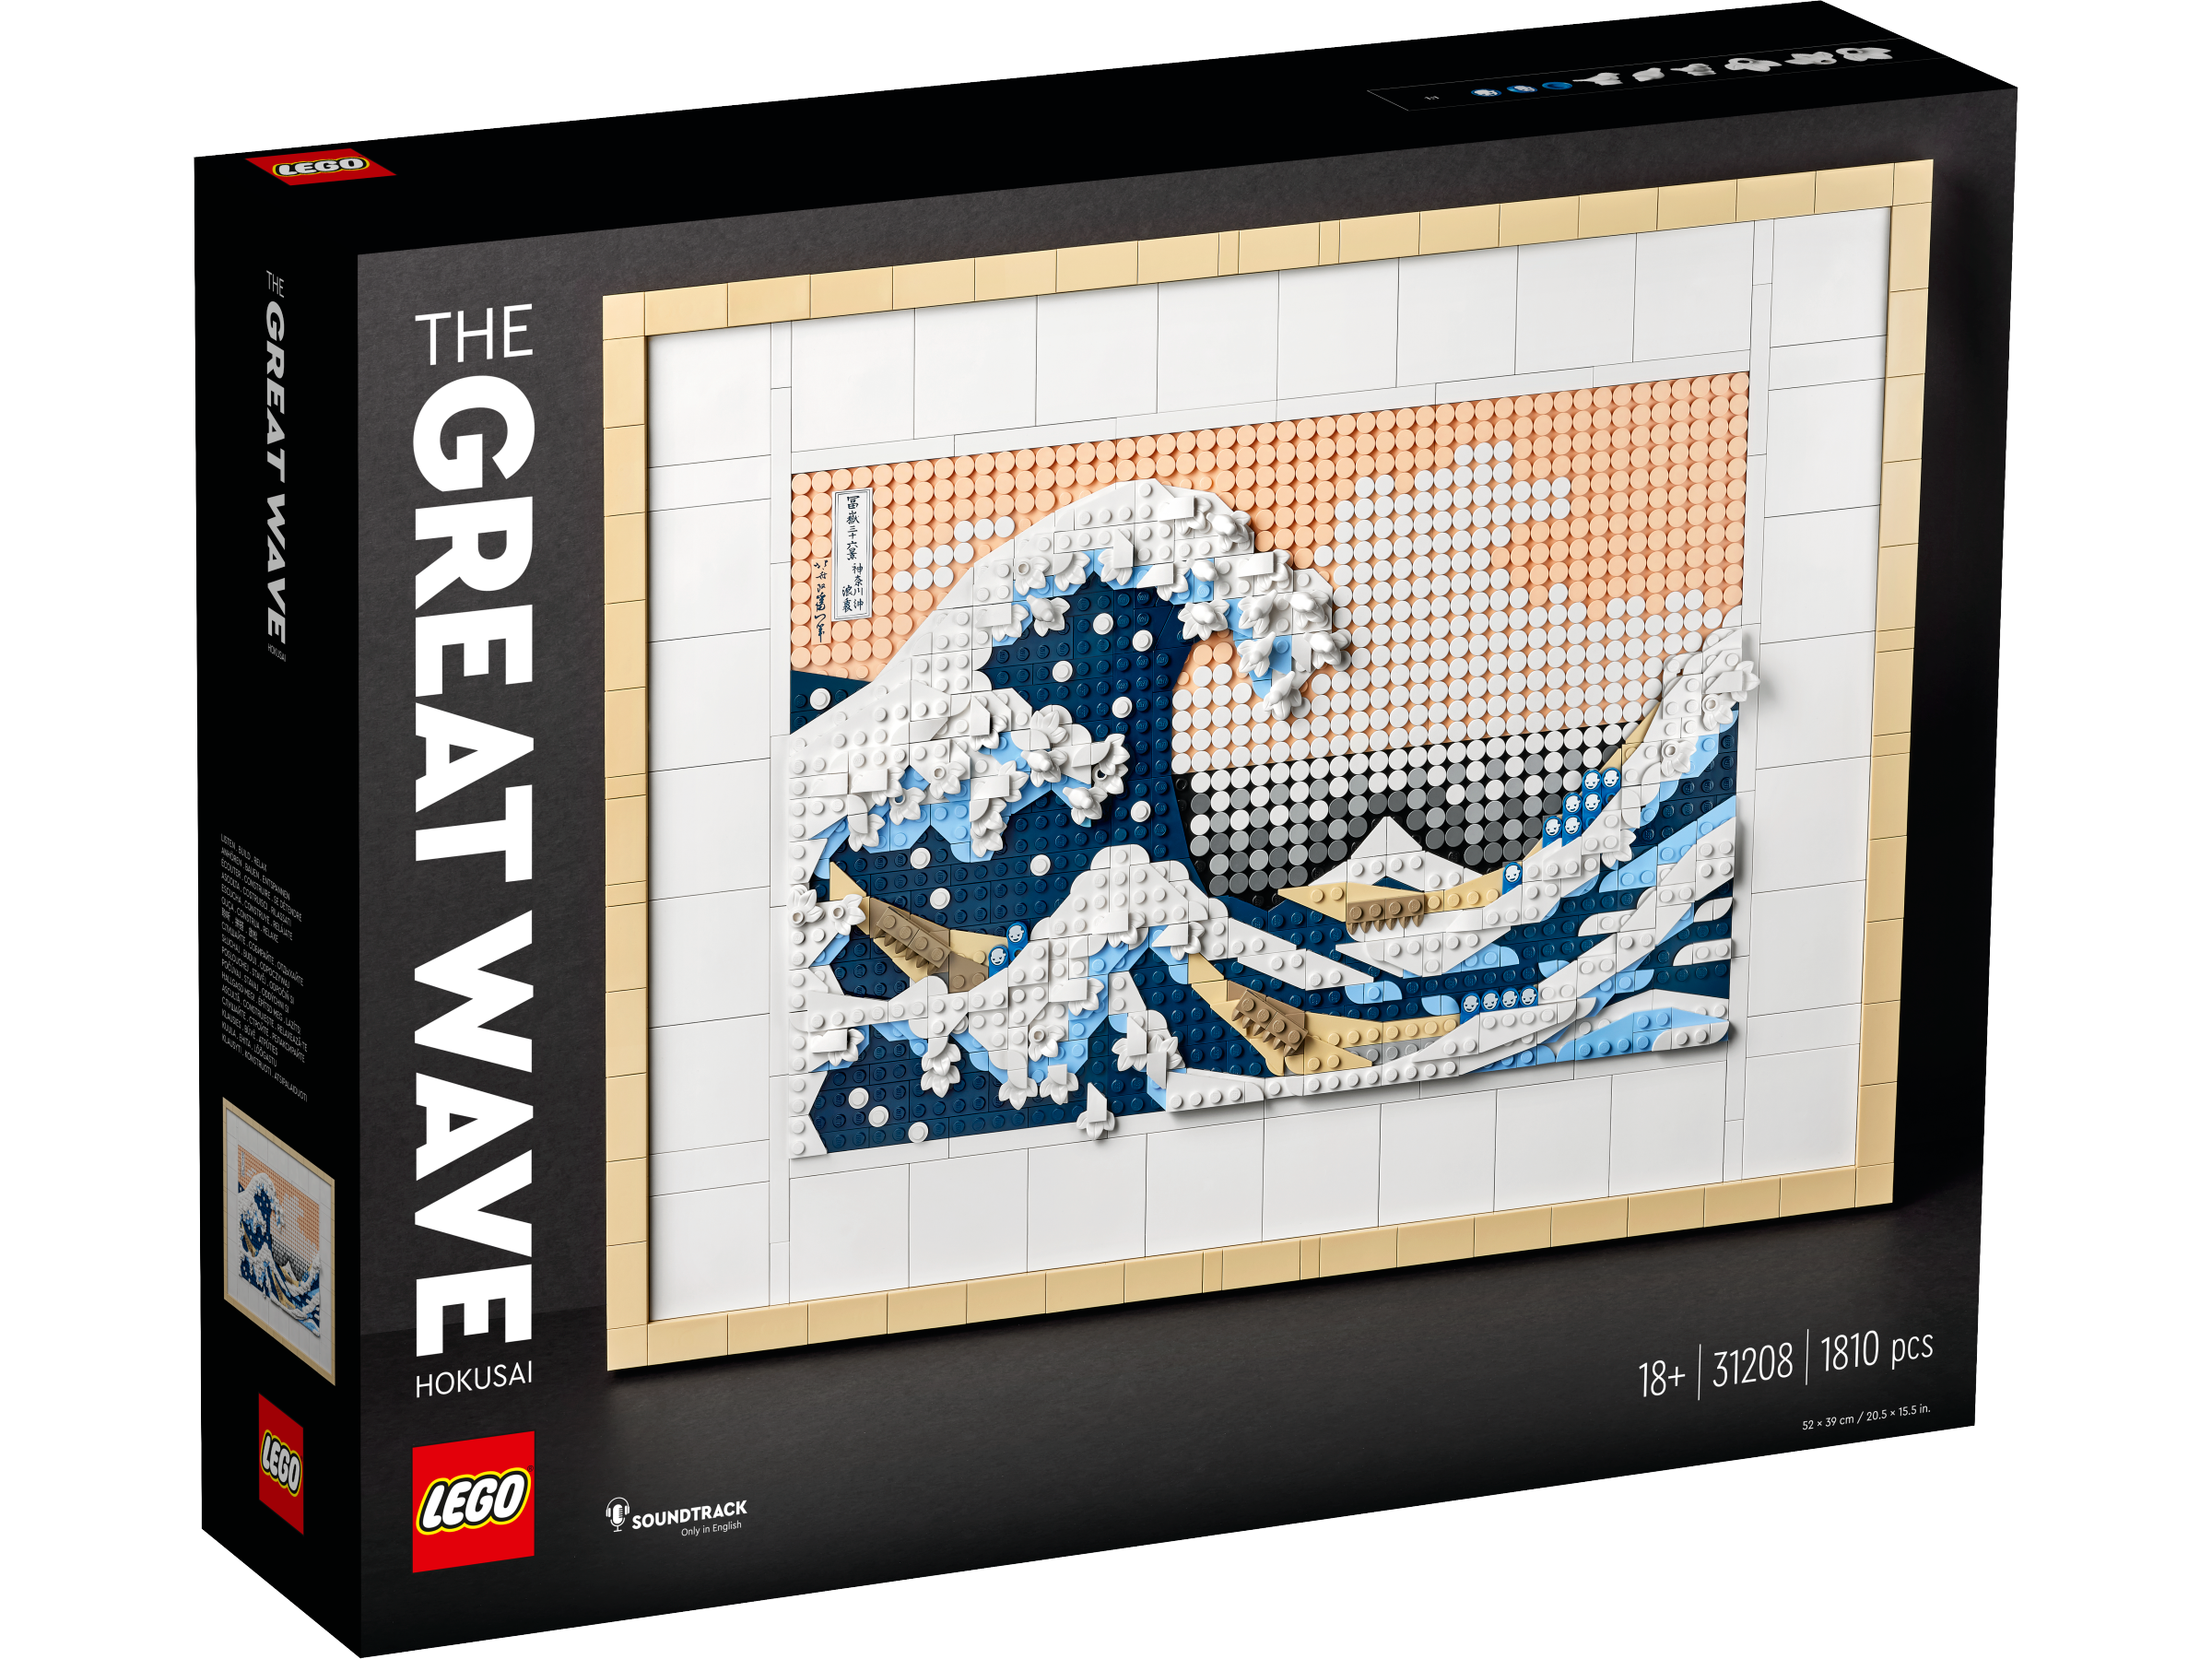 Lego 31208 Hokusai - The Great Wave